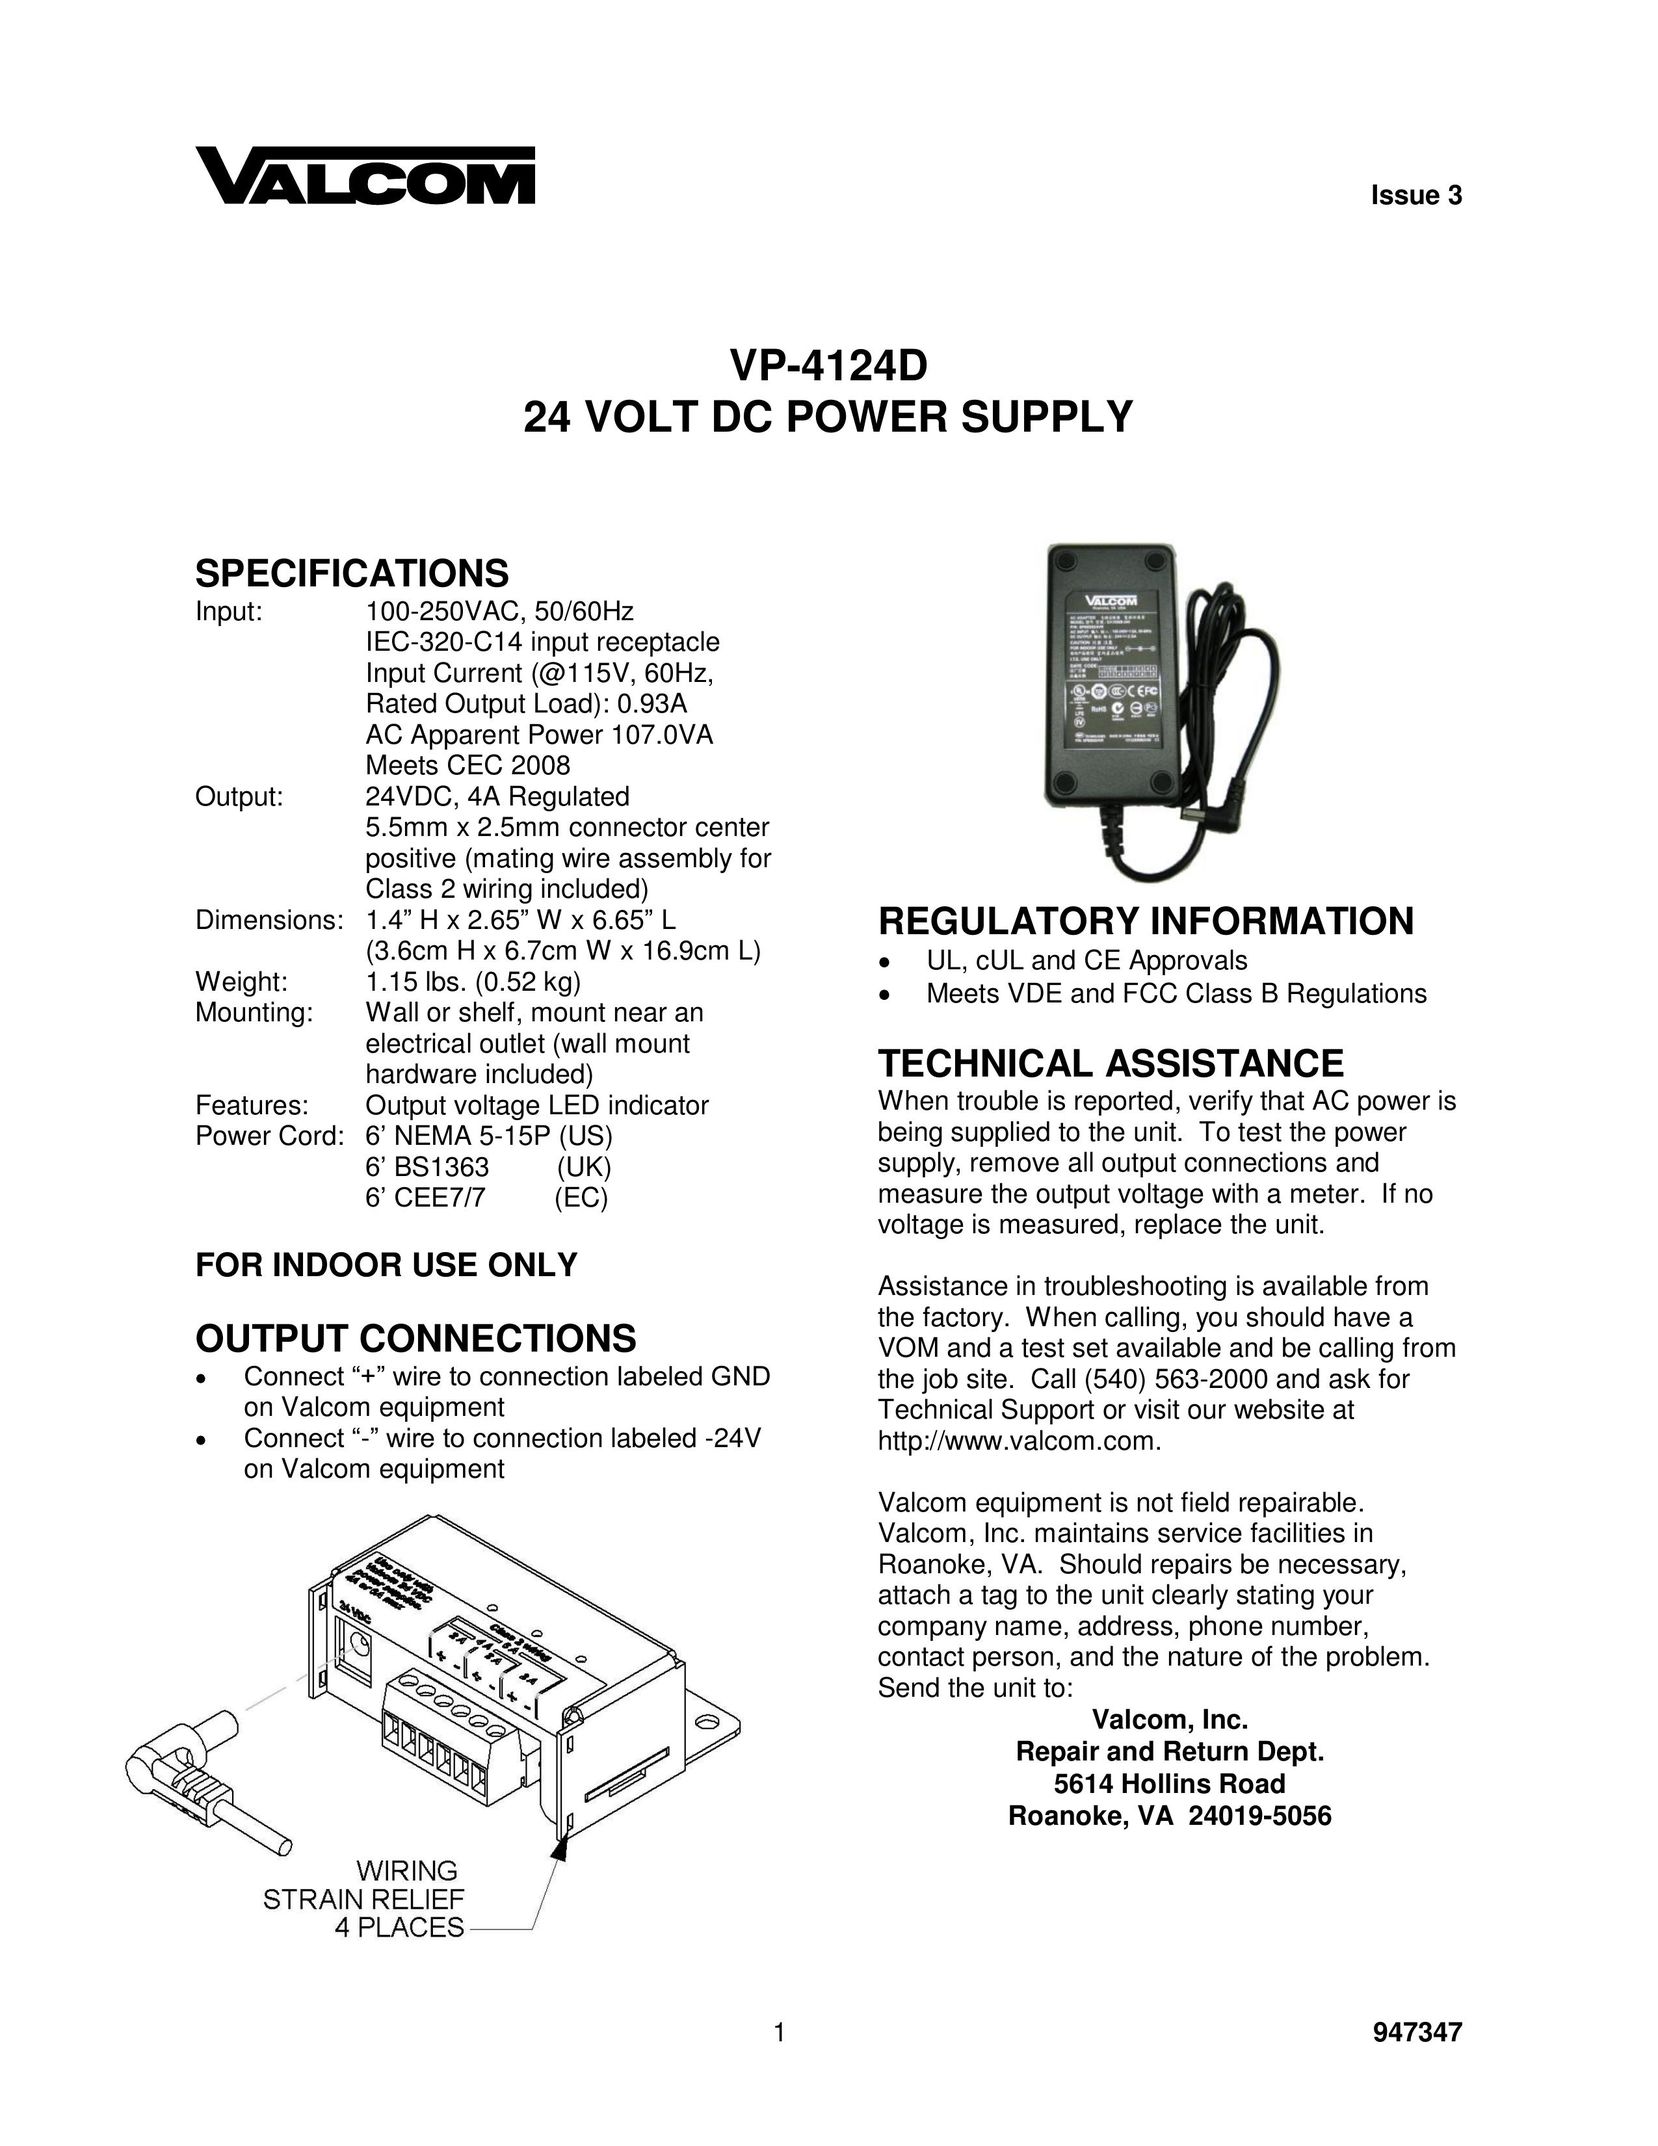 Valcom VP-4124D Power Supply User Manual